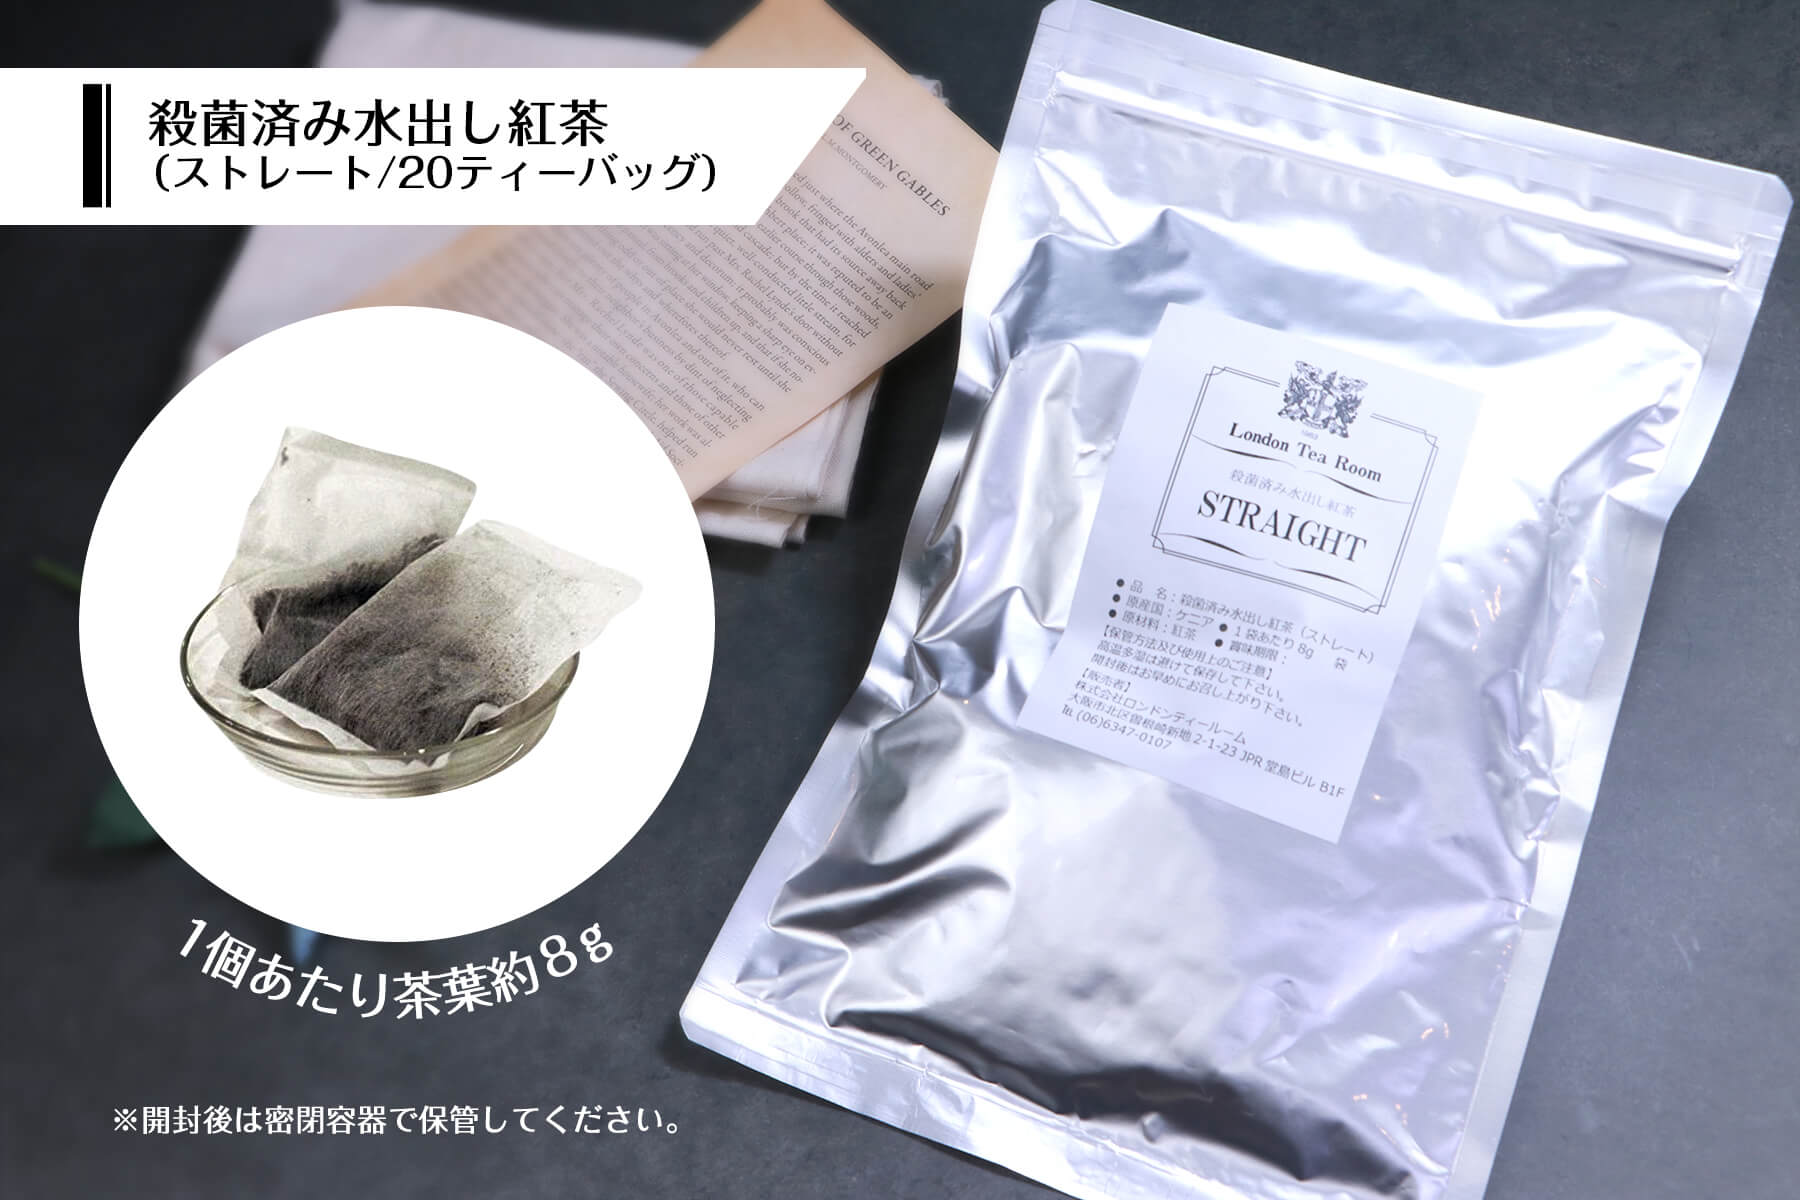 日本紅茶協会「おいしい紅茶の店」認定店がおくる水出し紅茶のセット